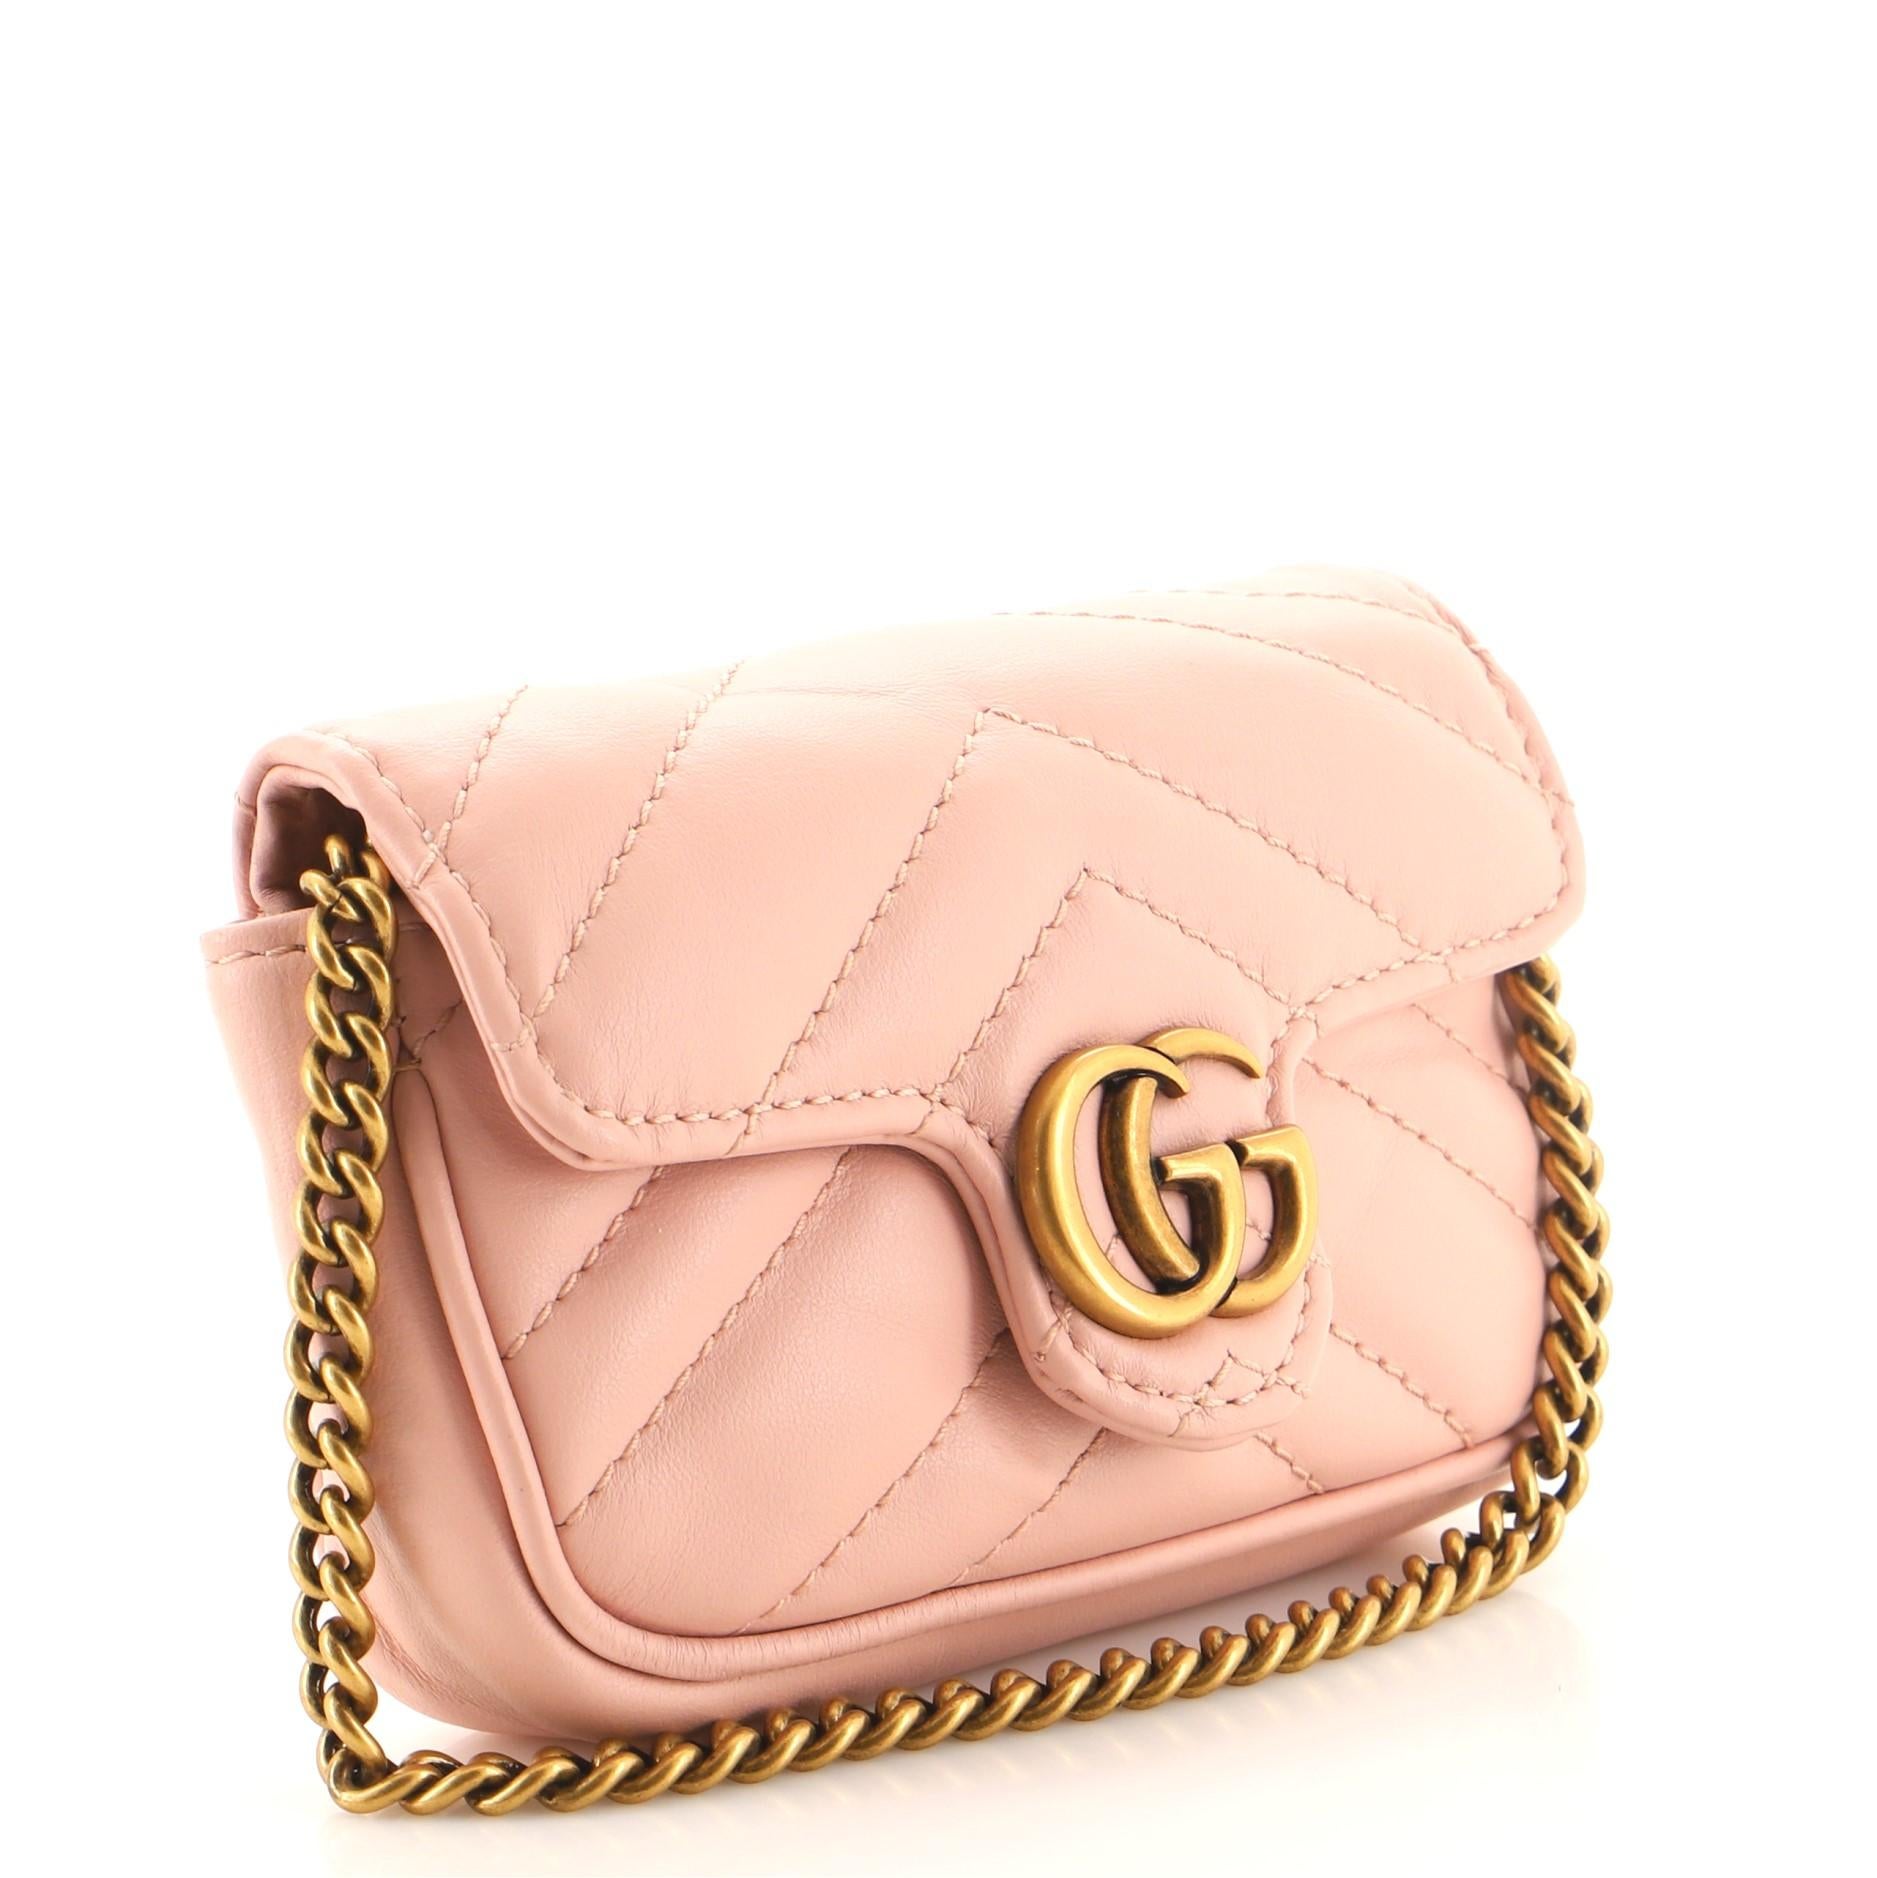 cg purse